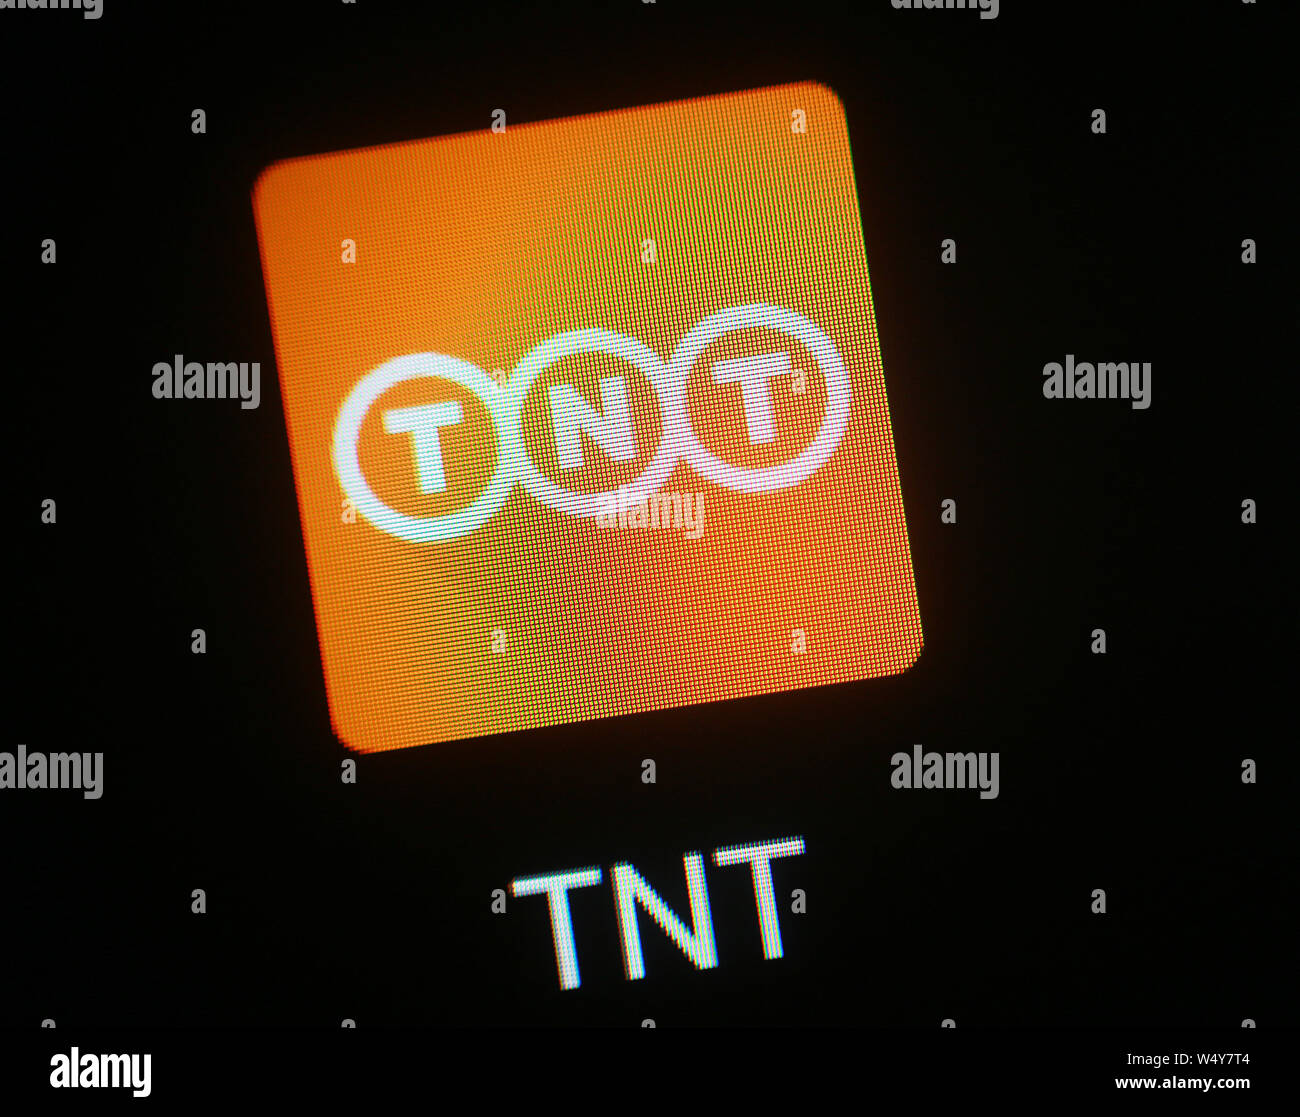 TNT Express ein Symbol auf dem Display. Stockfoto